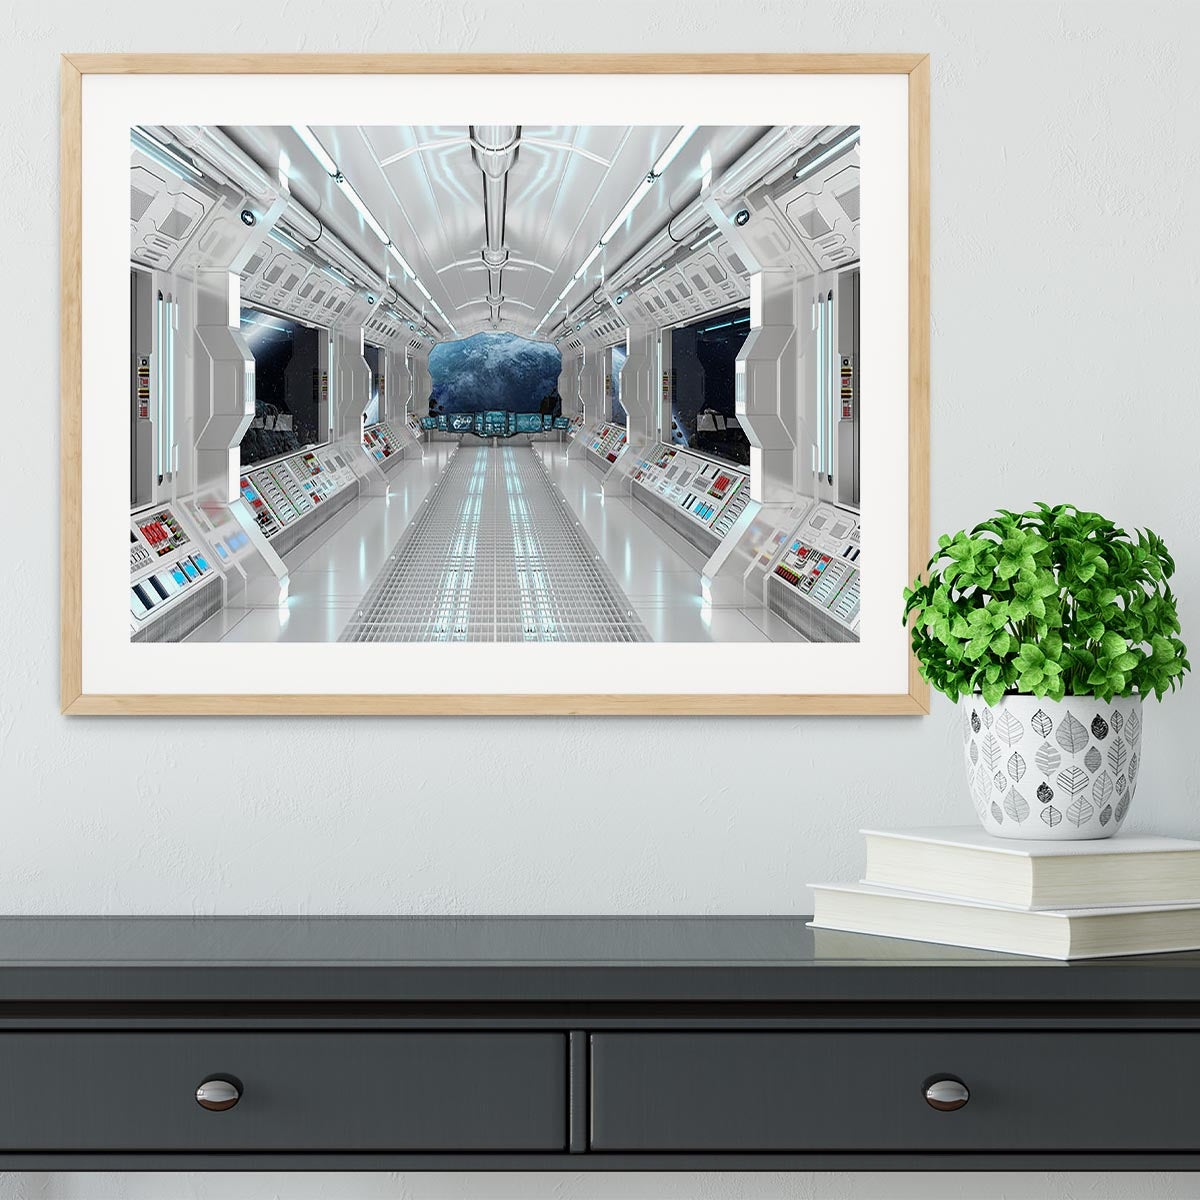 Inside Space Shuttle Framed Print - Canvas Art Rocks - 3